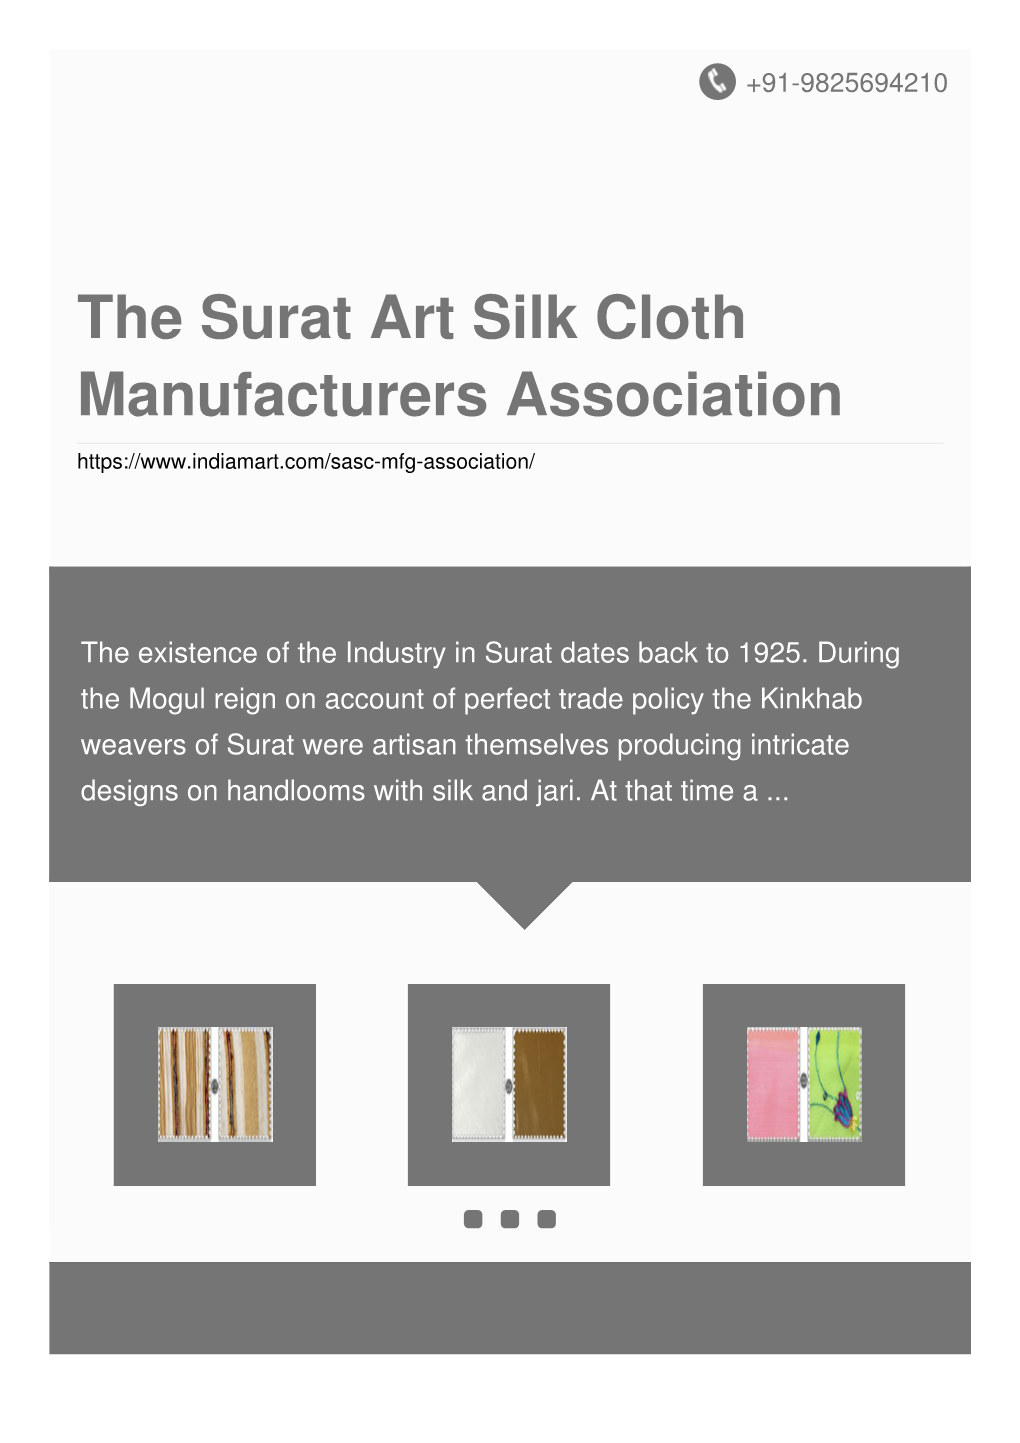 The Surat Art Silk Cloth Manufacturers Association